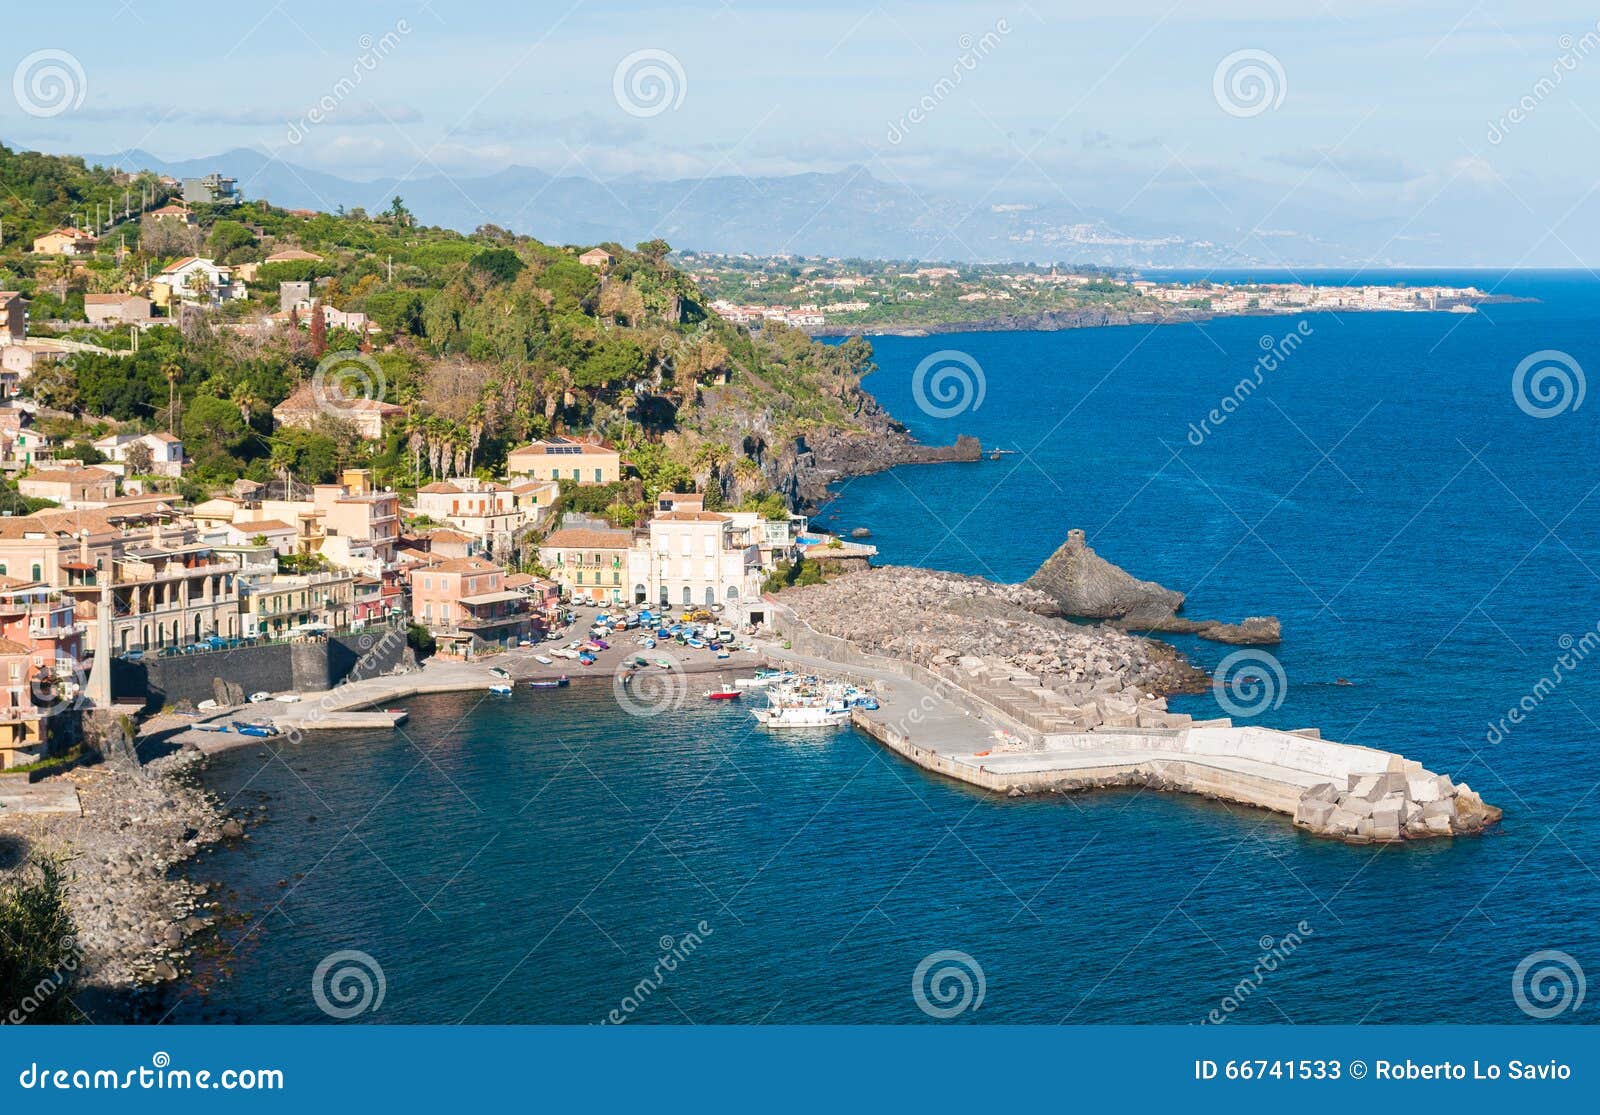 the small sea village of santa maria la scala (near catania) in sicily